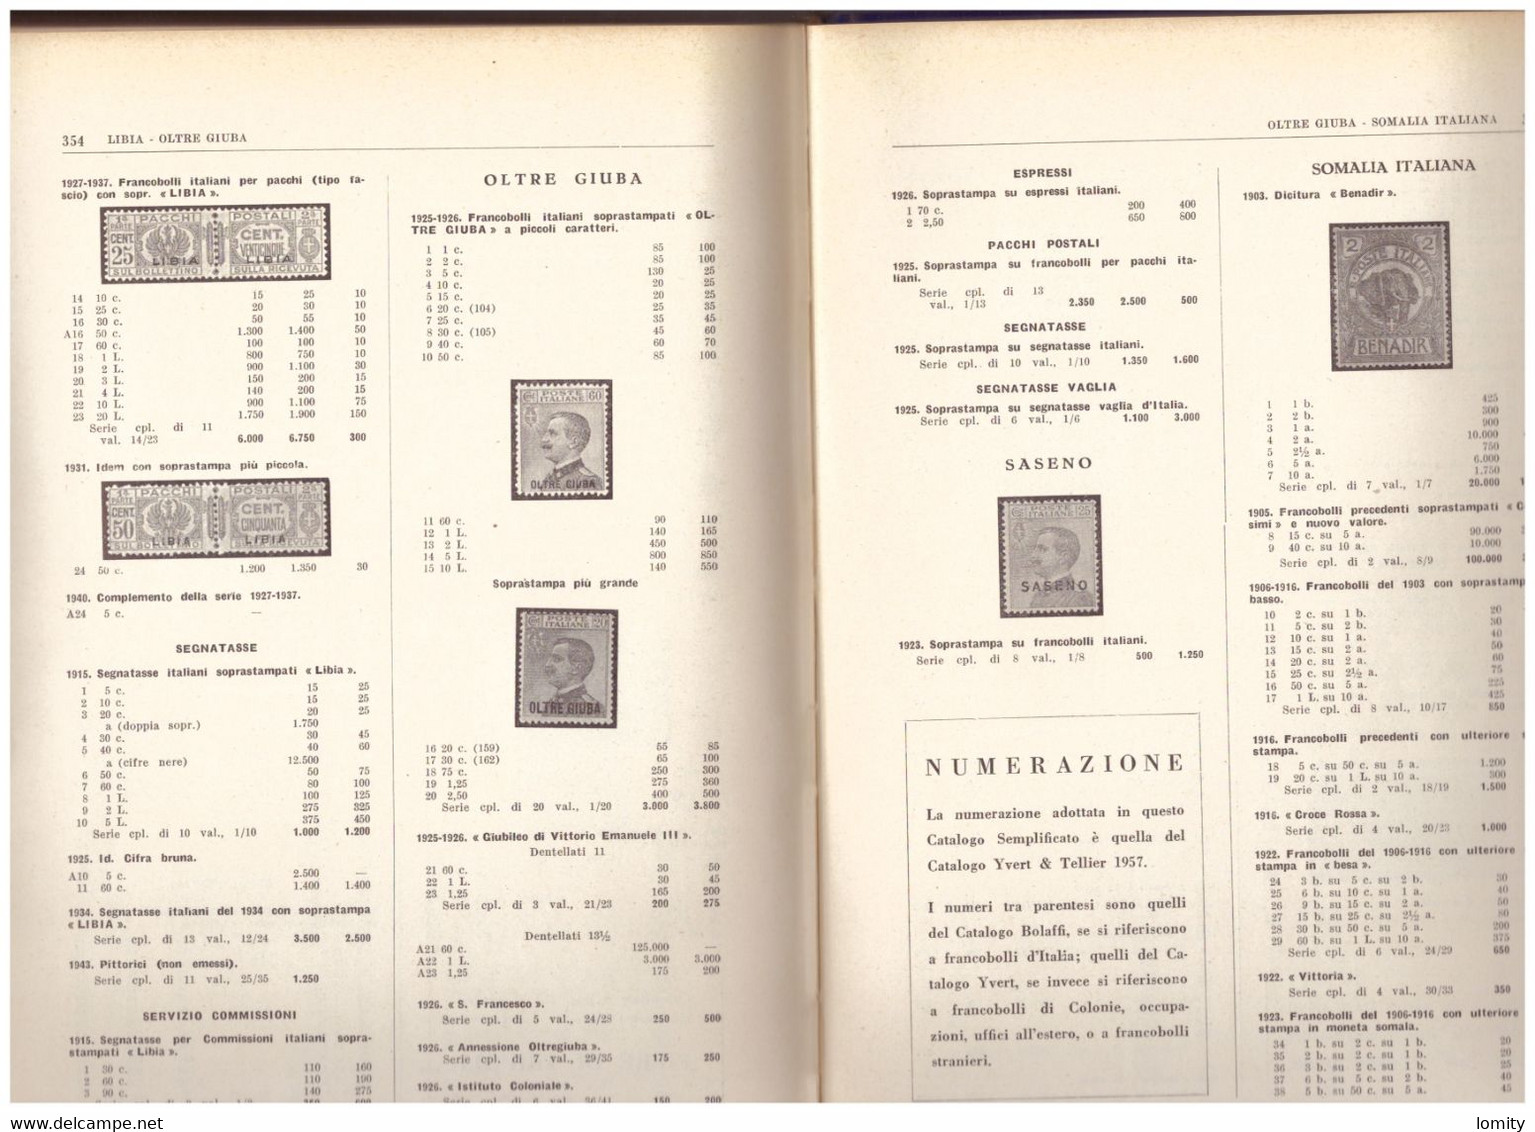 Catalogue Italie Bolaffi 1957 Catalogo Dei Francobelli Italiani 372 Pages - Italia